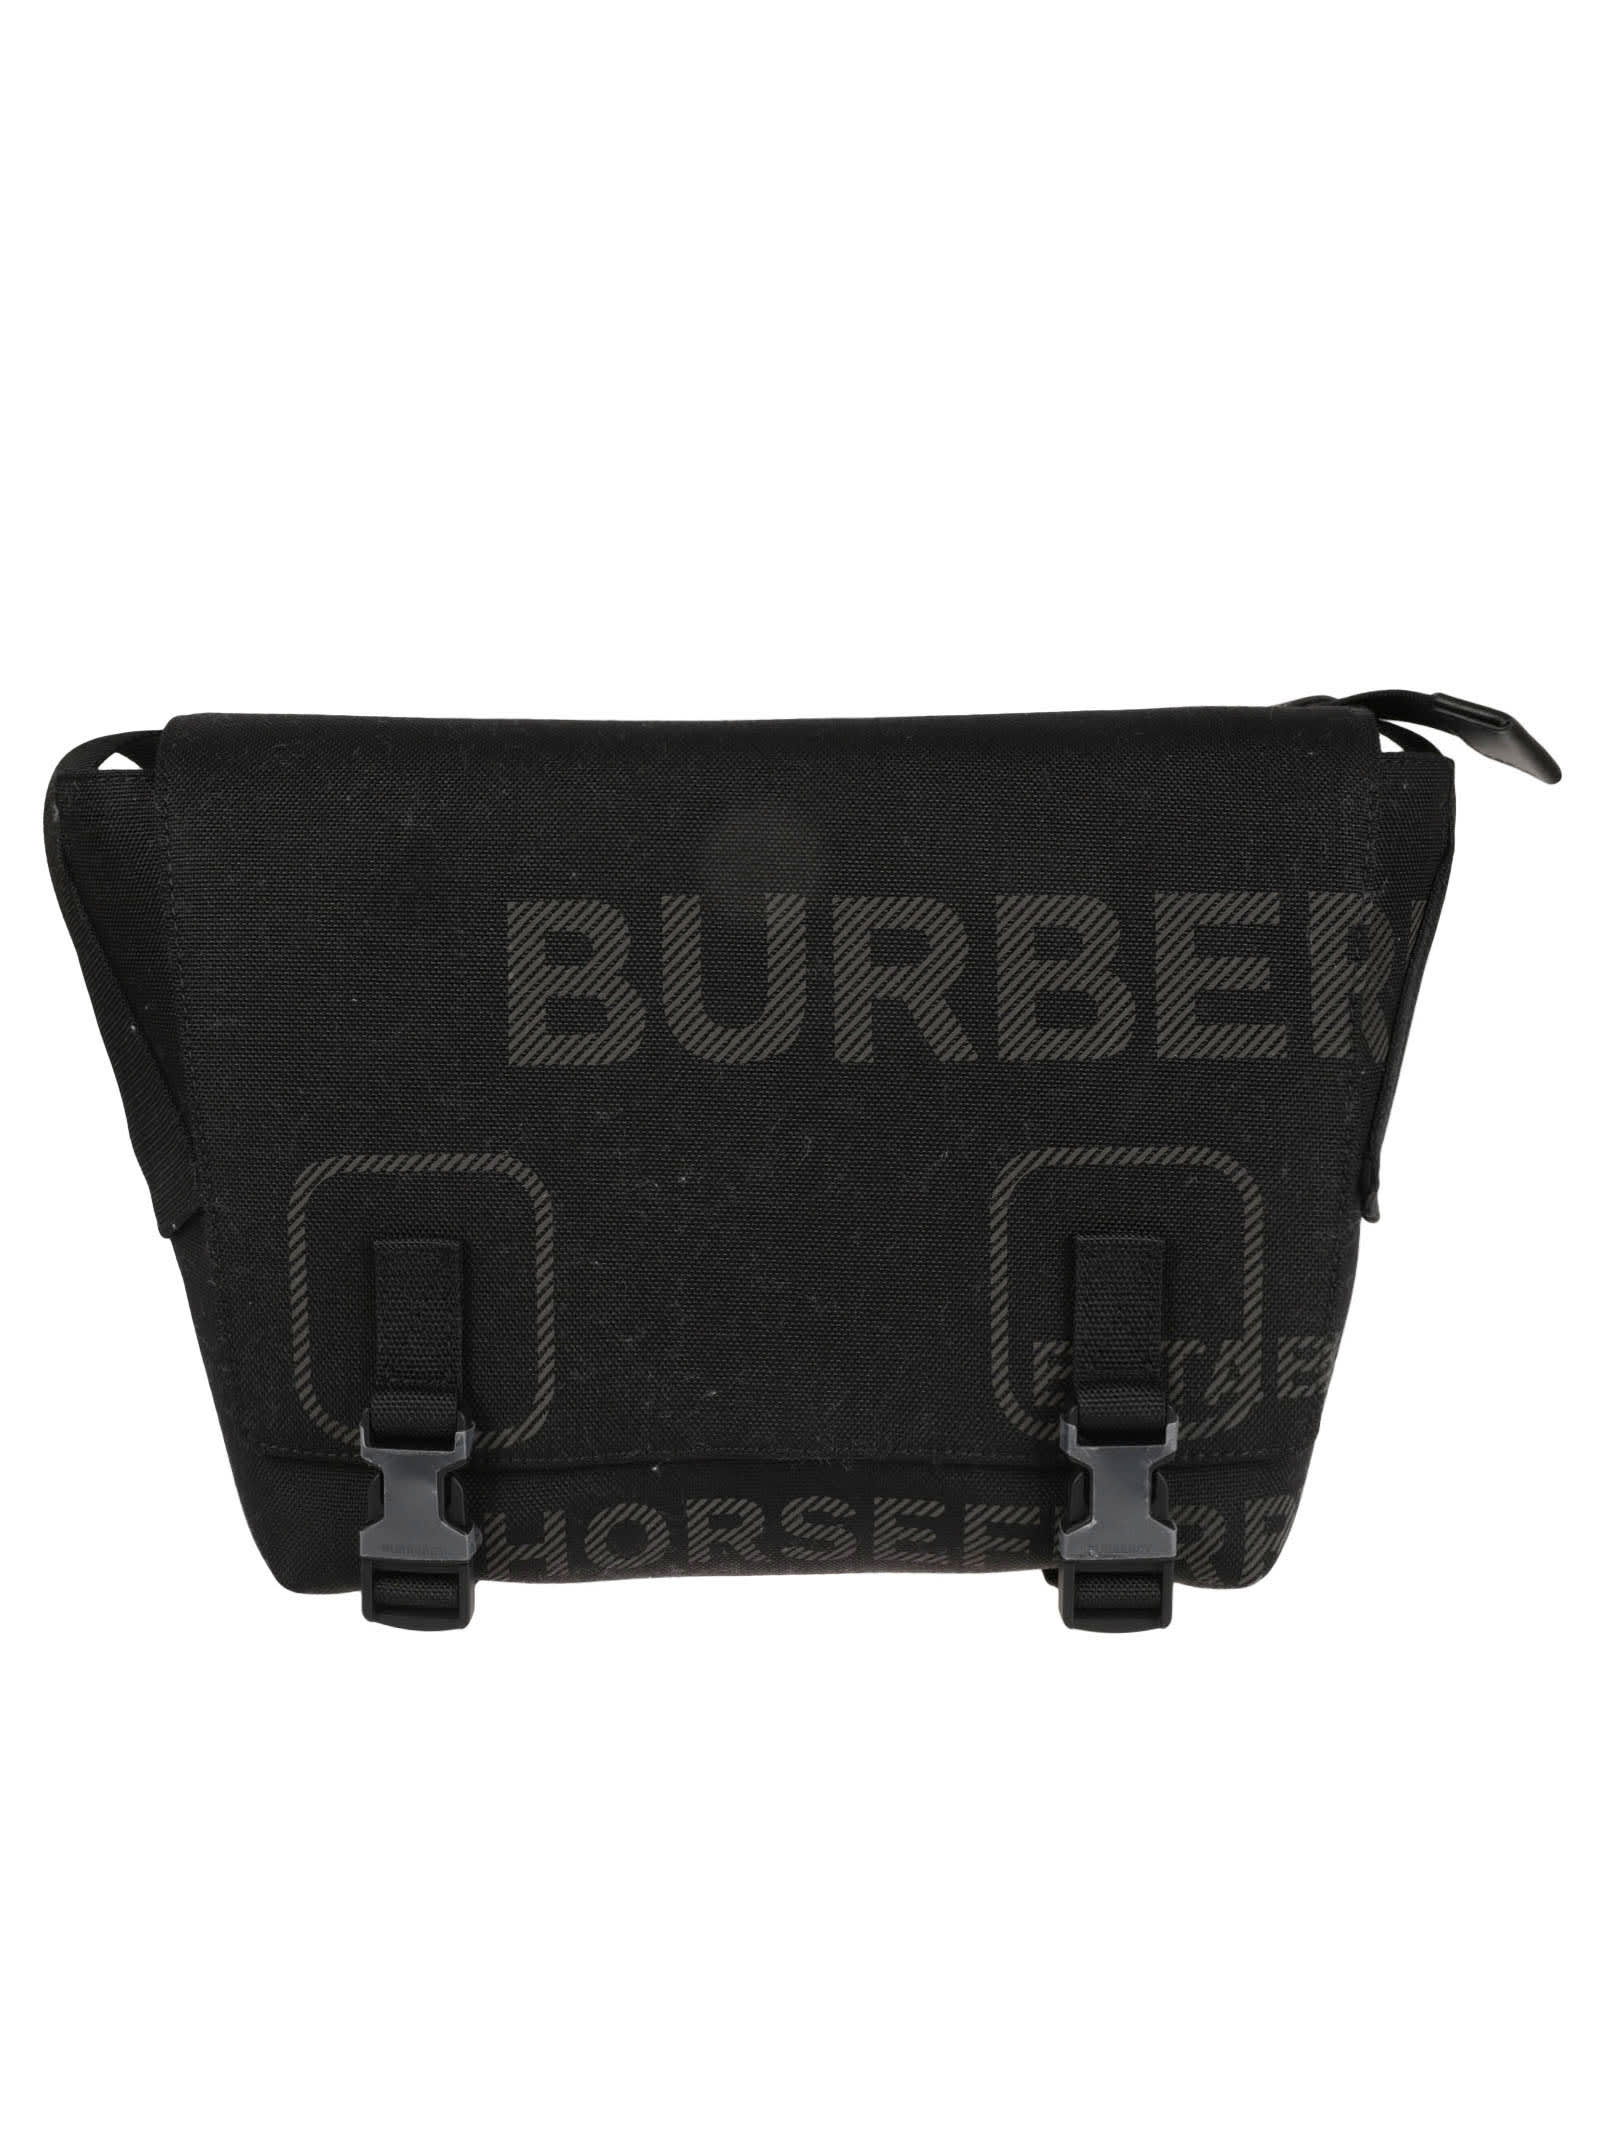 Burberry Small Lock Gfg Messenger Bag